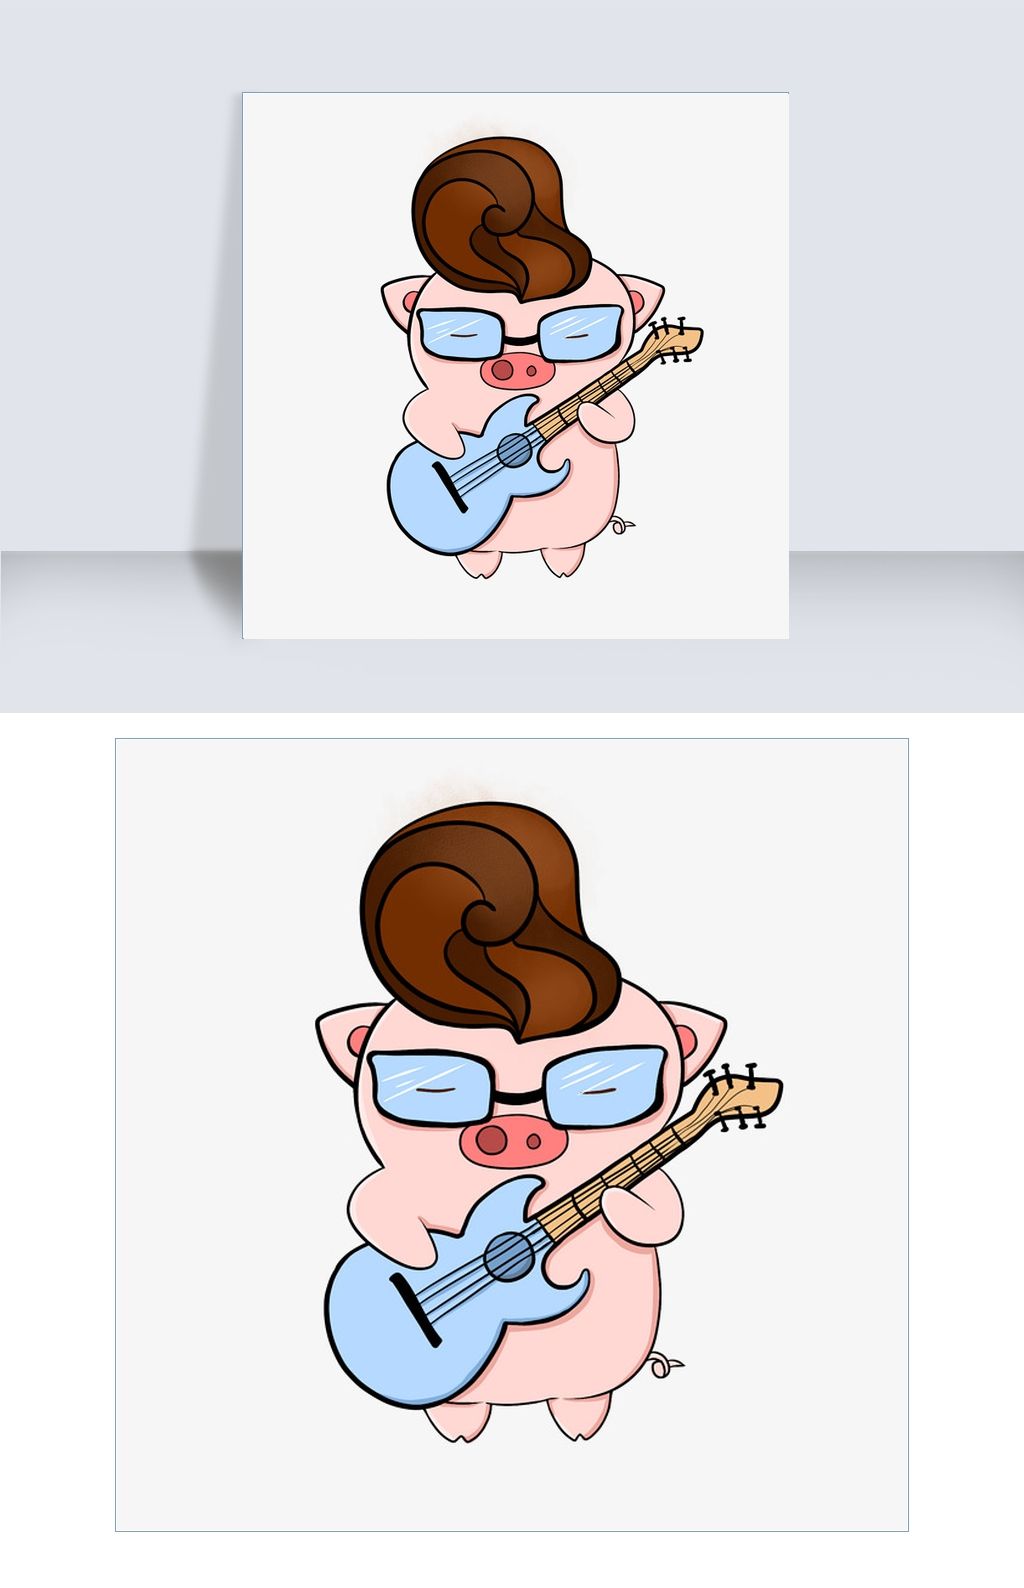 猪年炫酷发型戴眼镜的小猪弹吉他